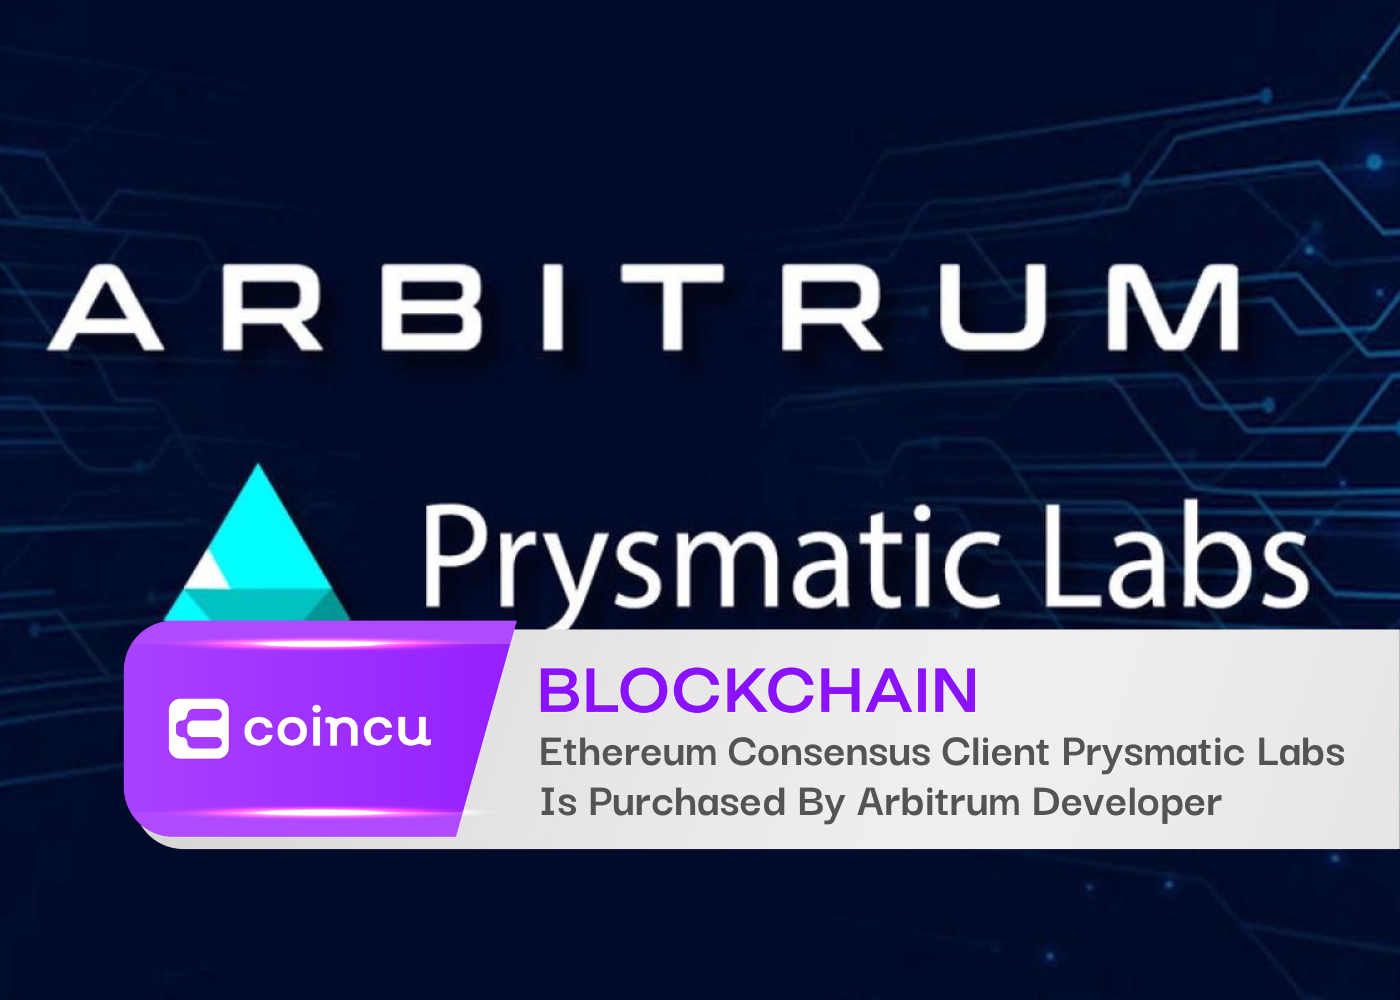 Ethereum Consensus Client Prysmatic Labs